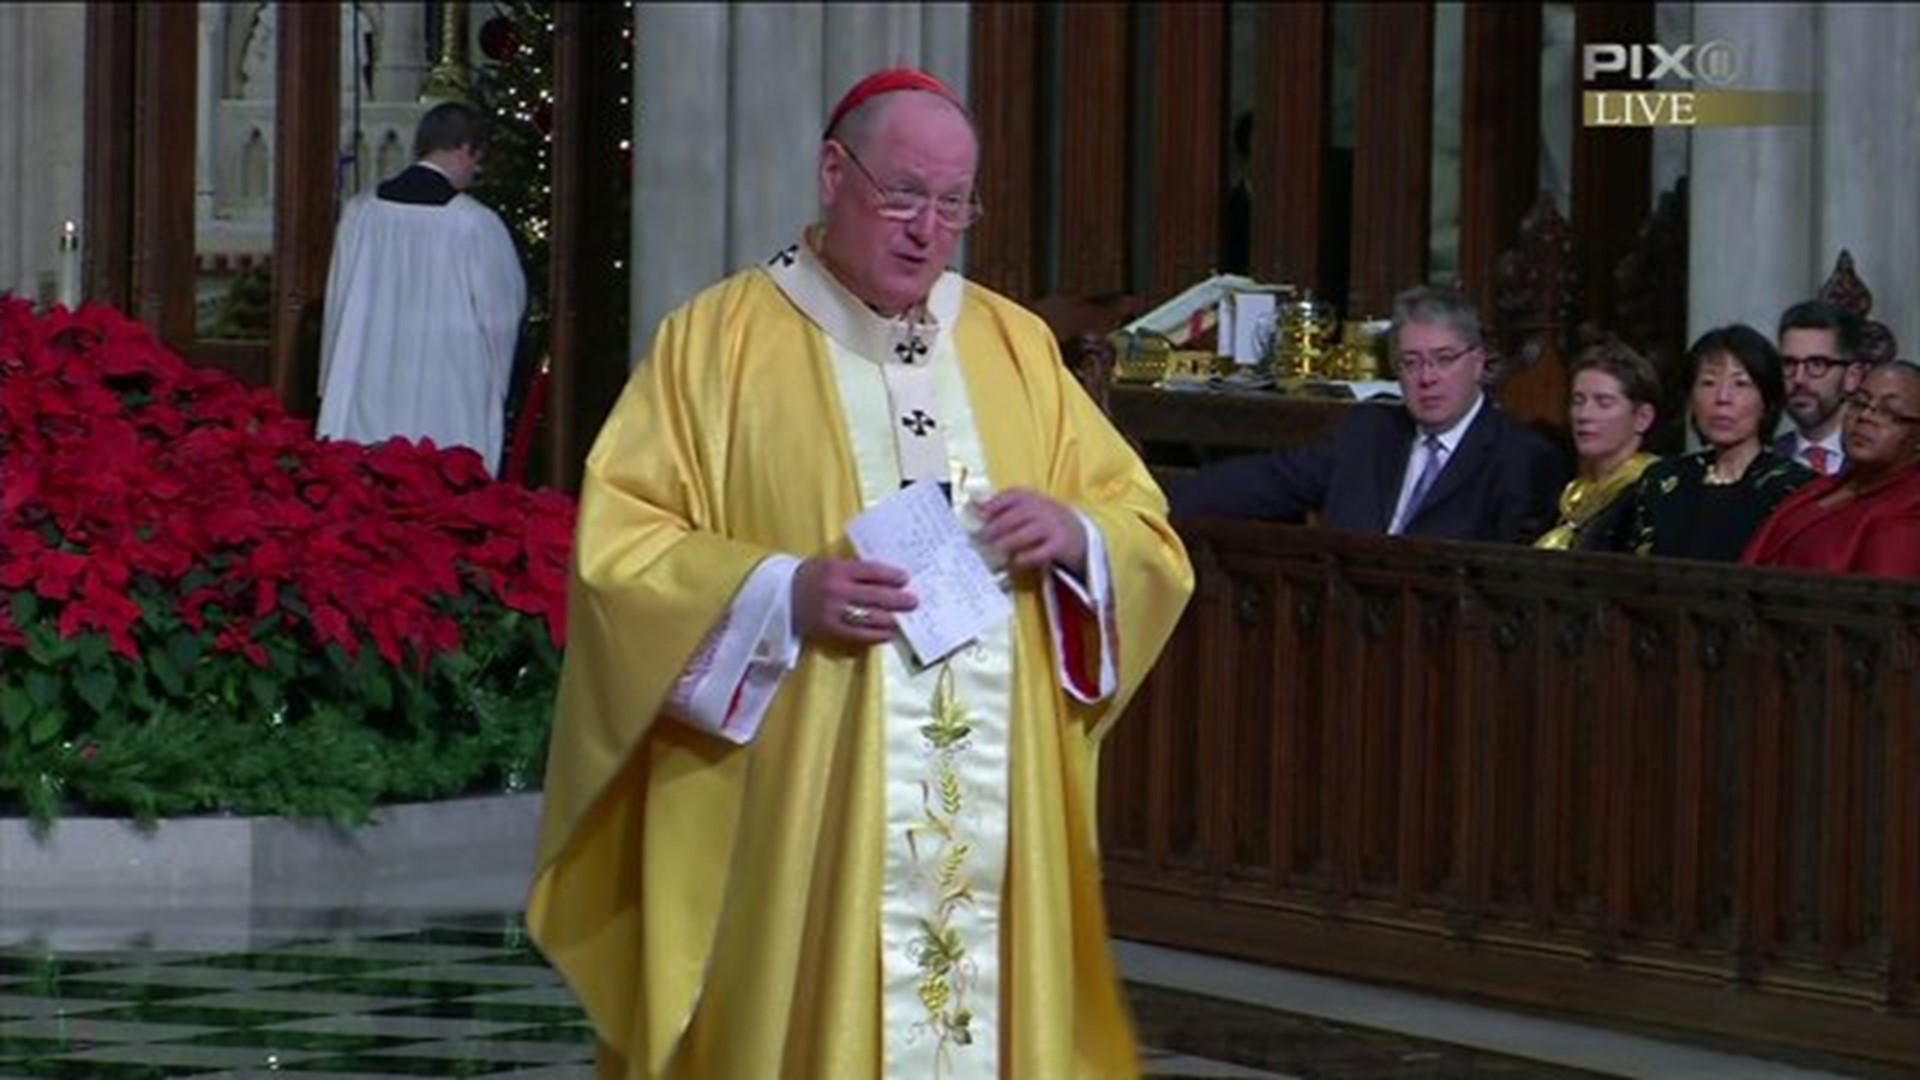 Cardinal Dolan discusses refugees at Christmas mass